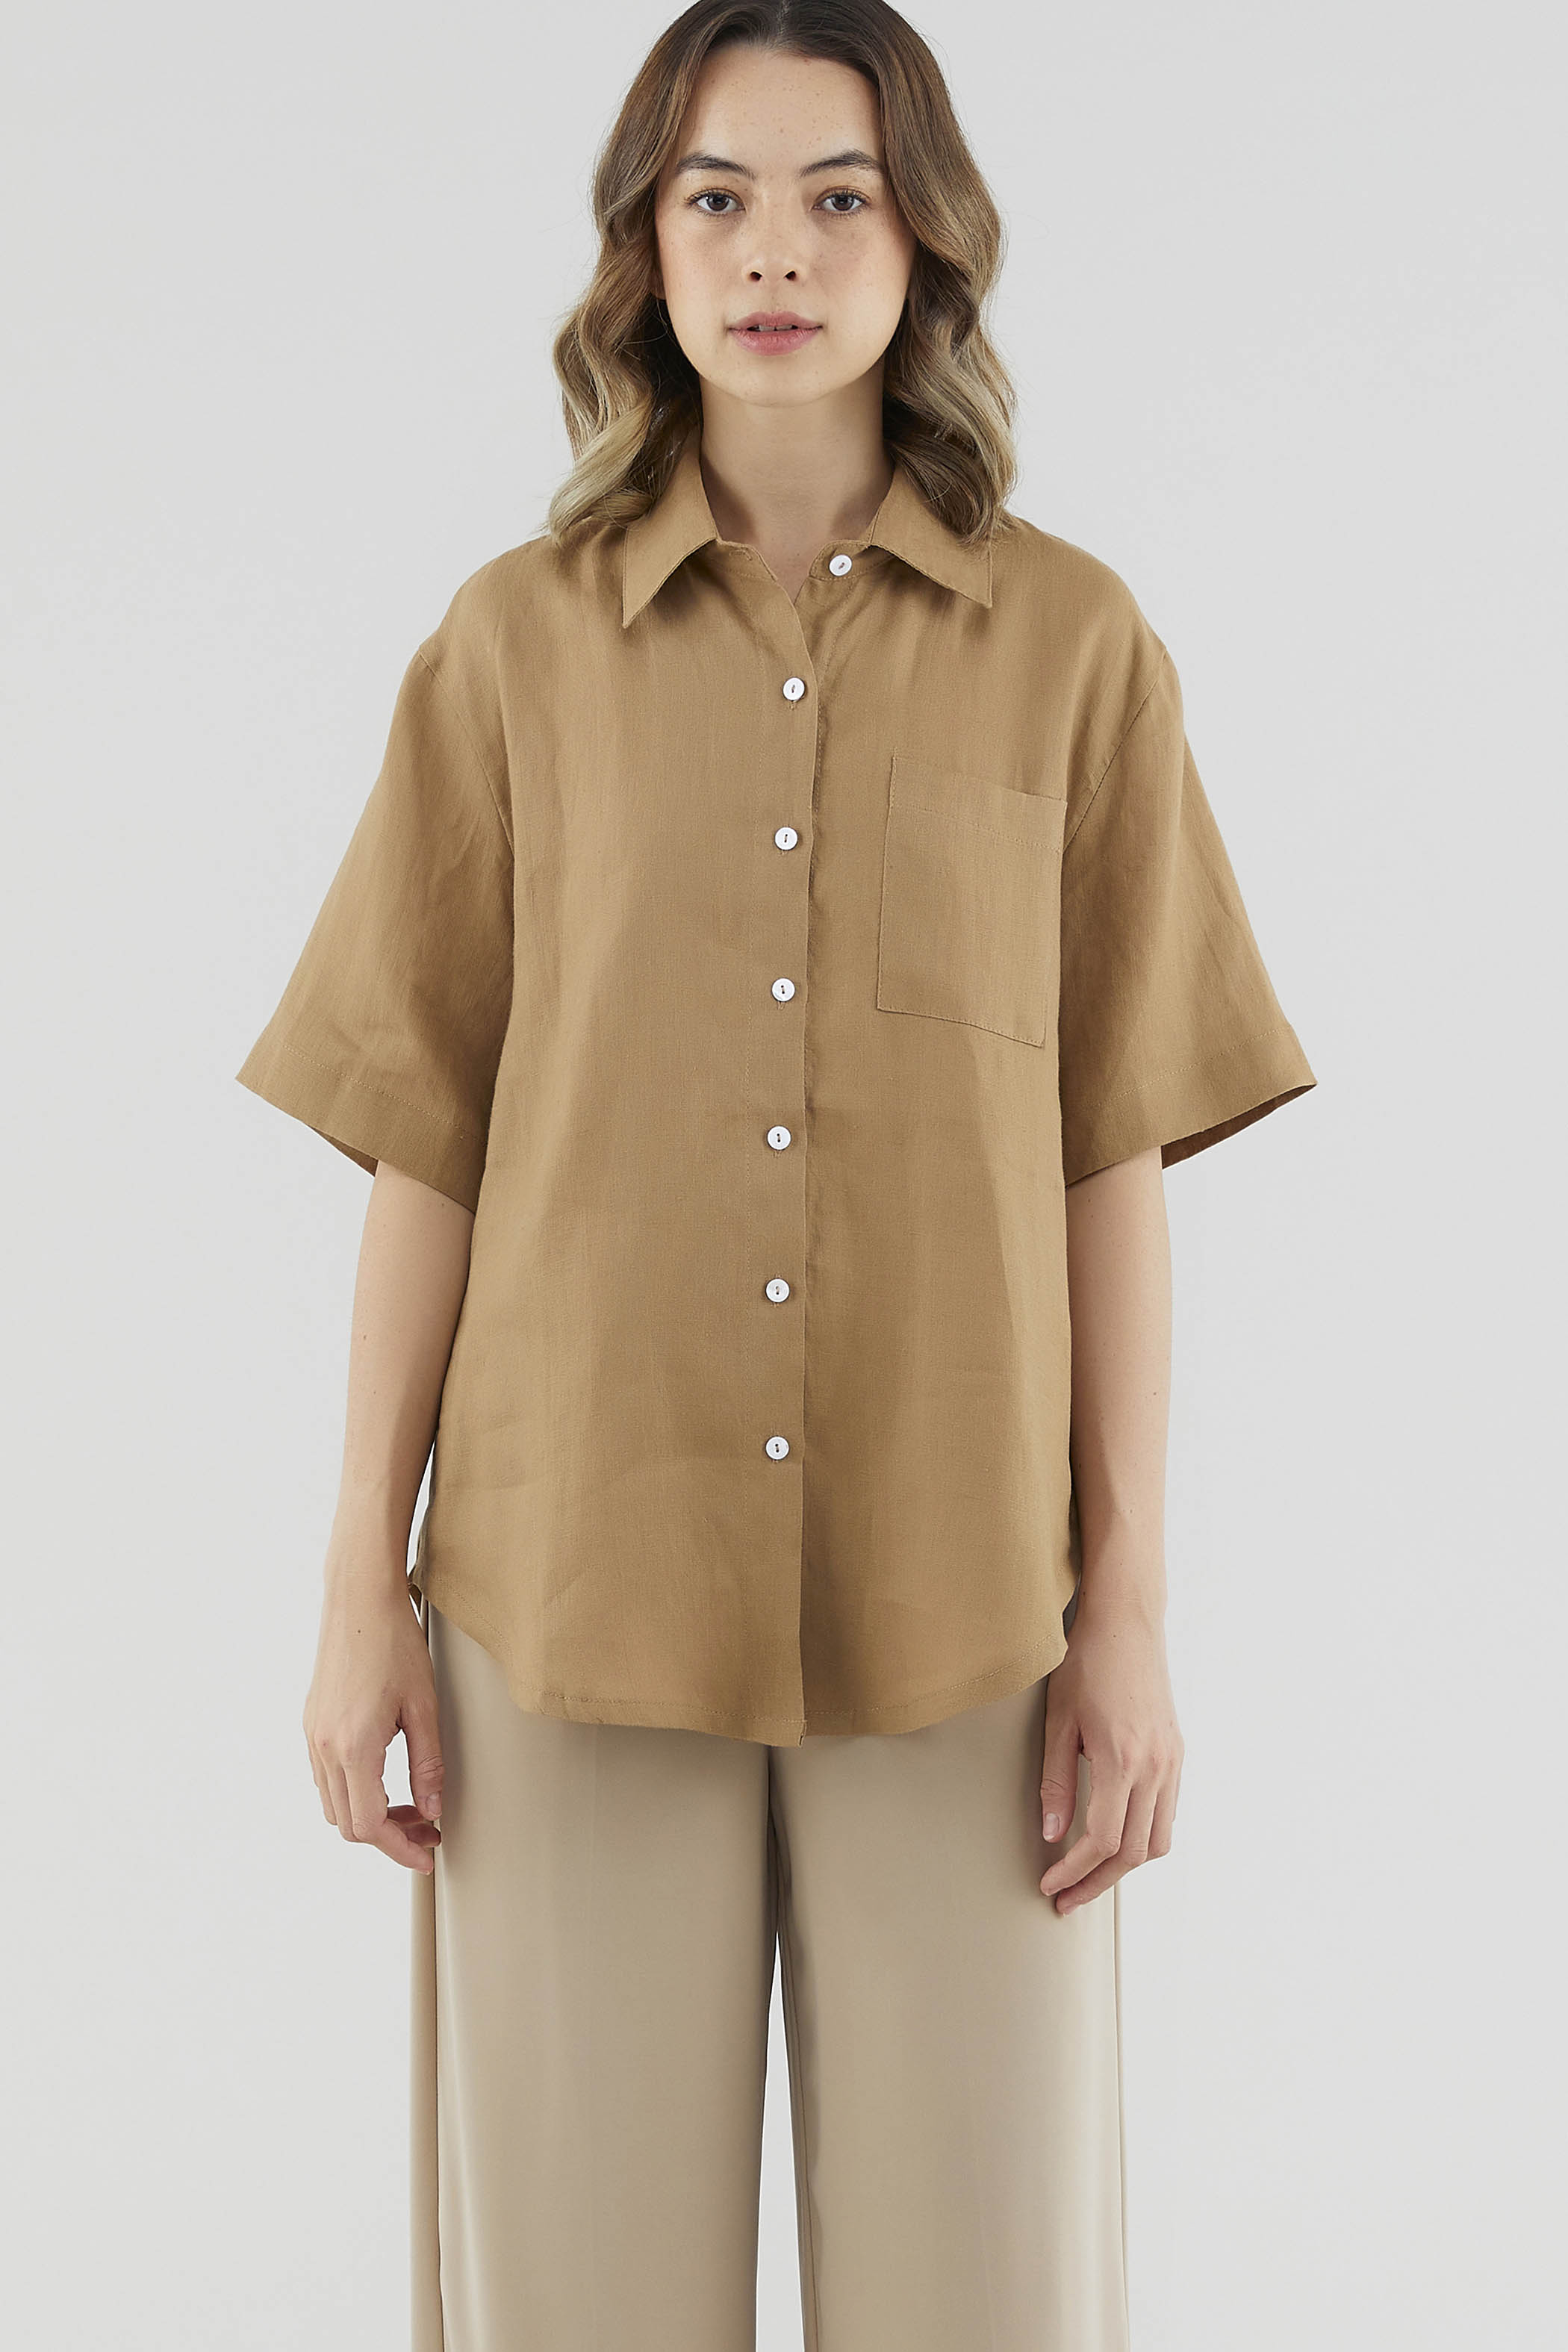 Jeneca Linen Short Sleeve Shirt